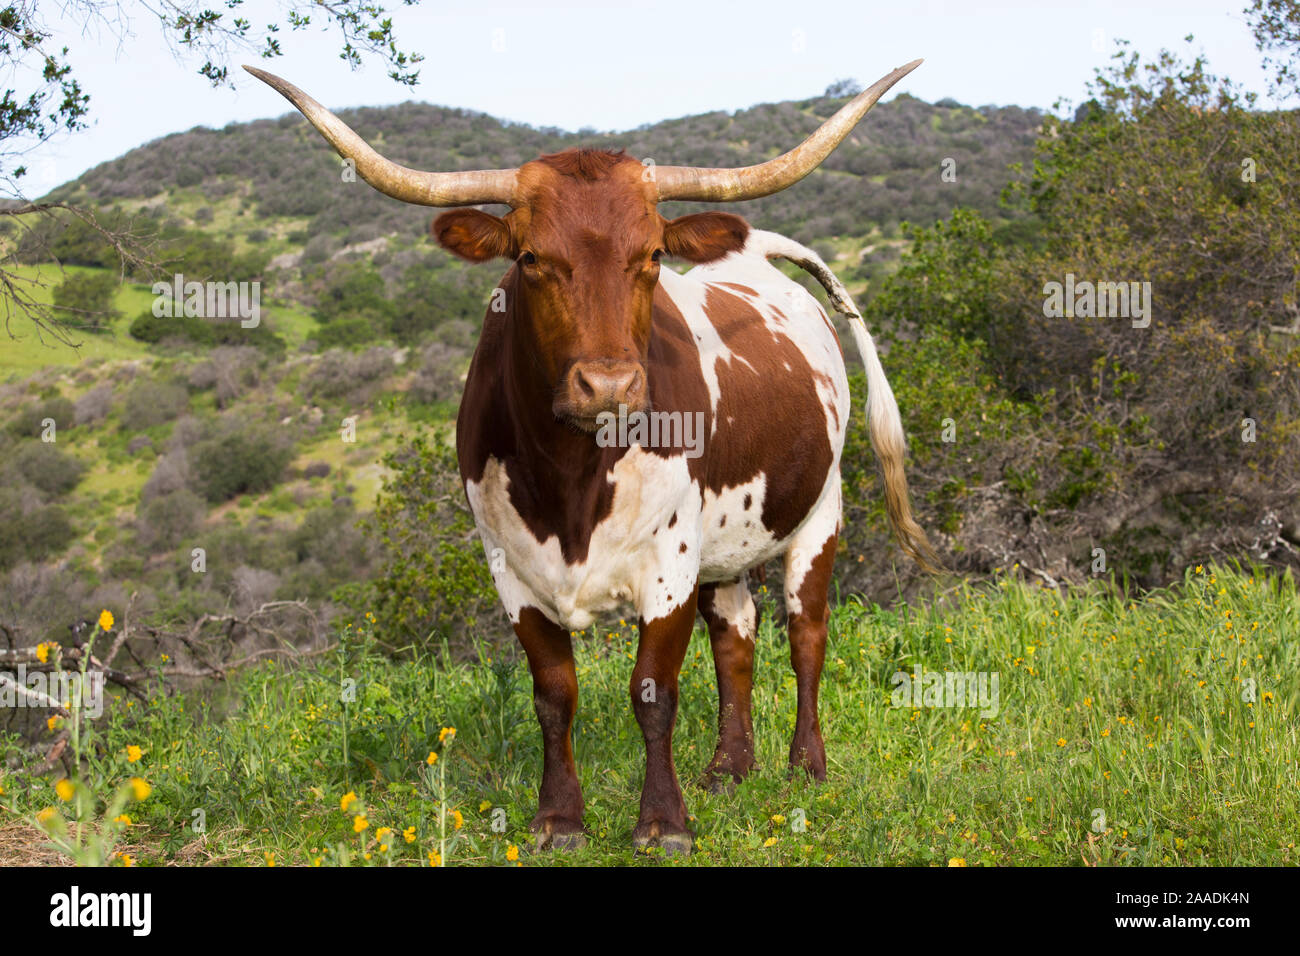 Vache Texas Longhorn High Country sur les pâturages, les contreforts des montagnes de Santa Ynez, Goleta, Californie, USA. Banque D'Images